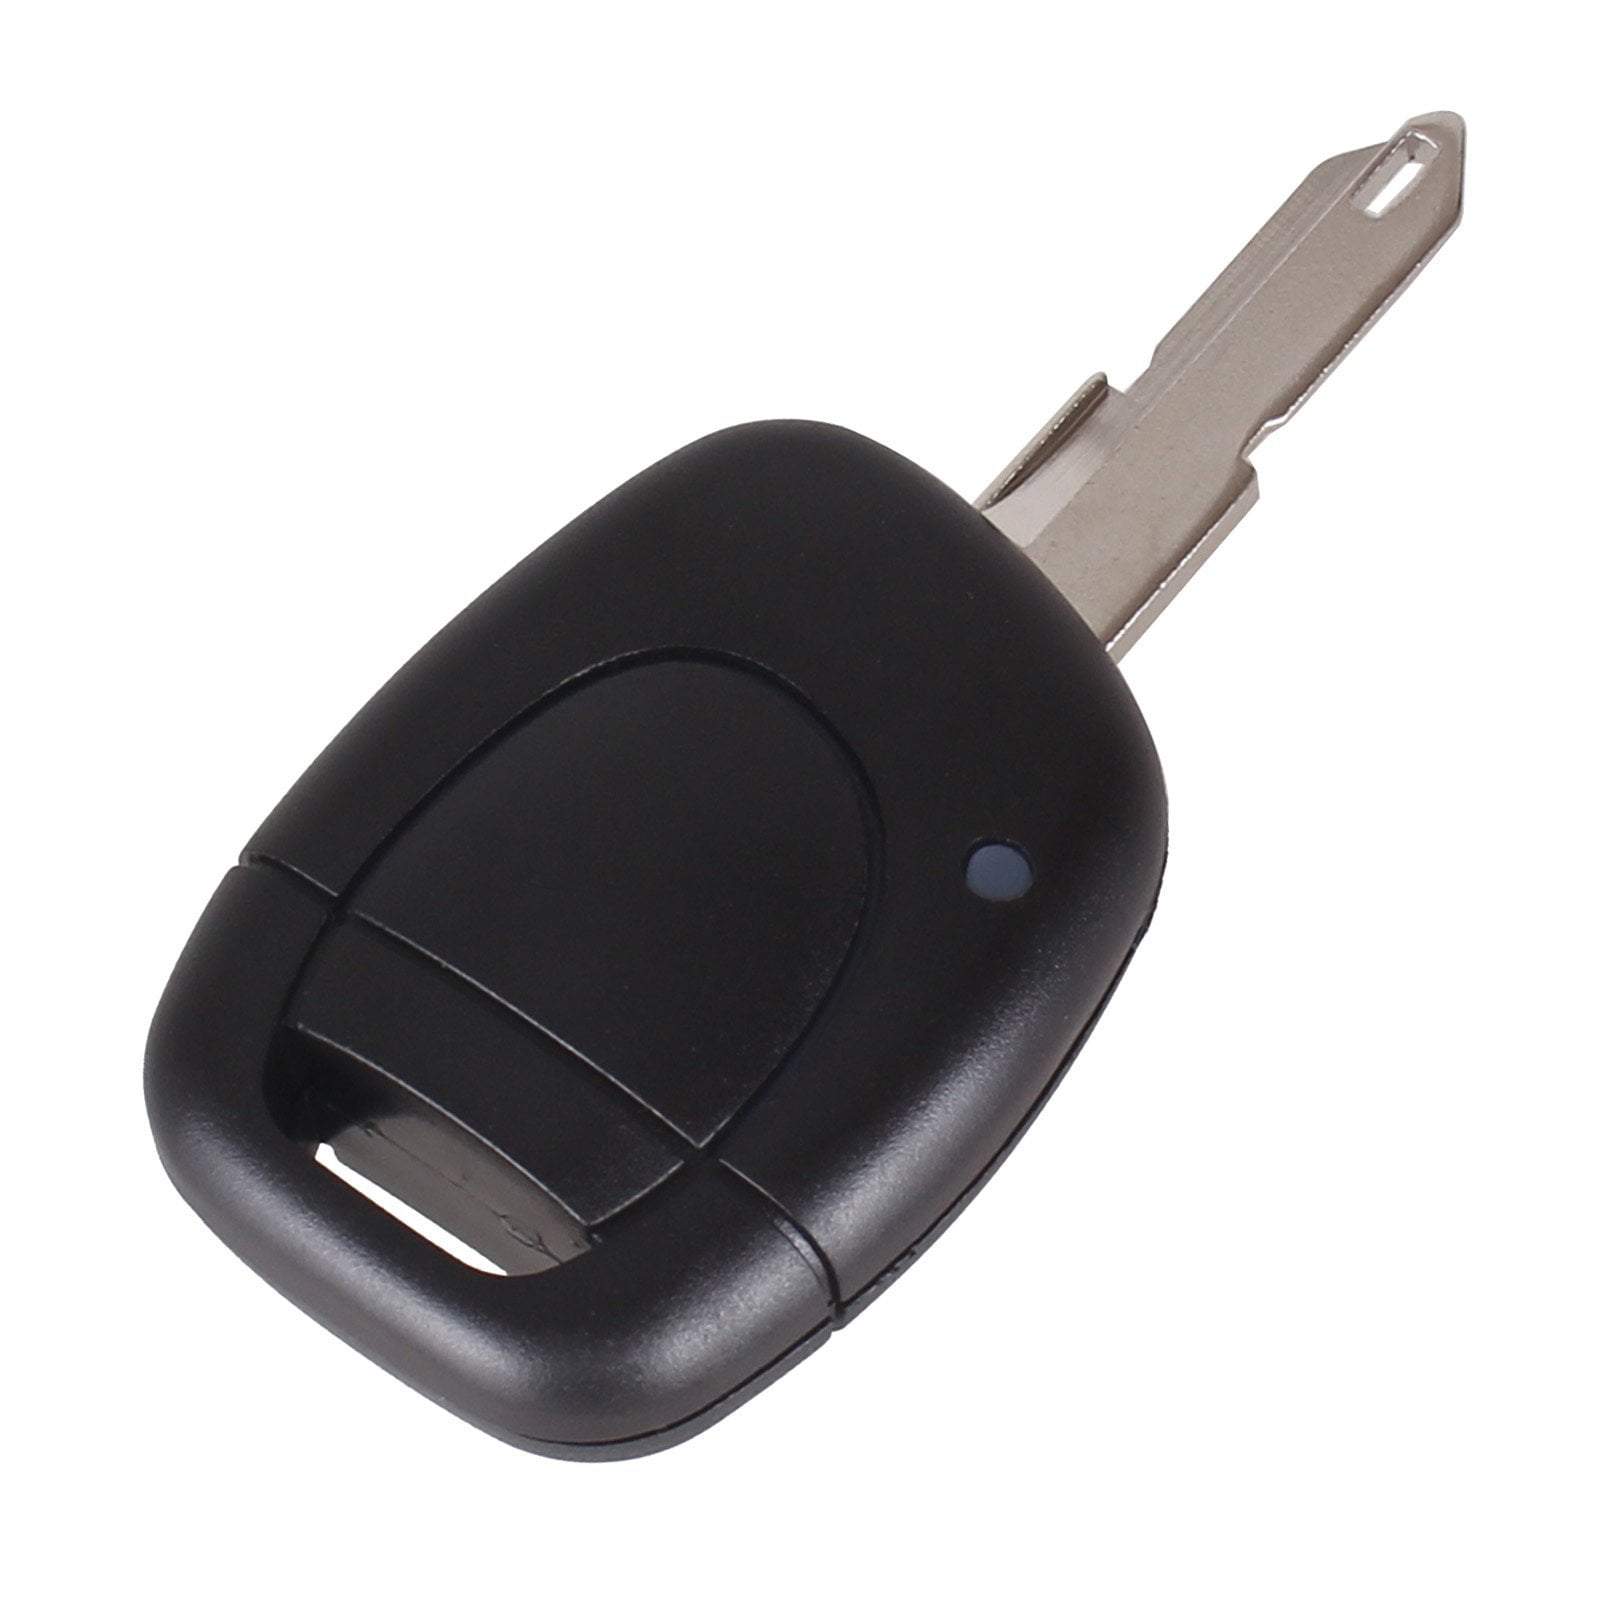 Fekete színű, 1 gombos Renault kulcsház VA3 kulcsszárral.